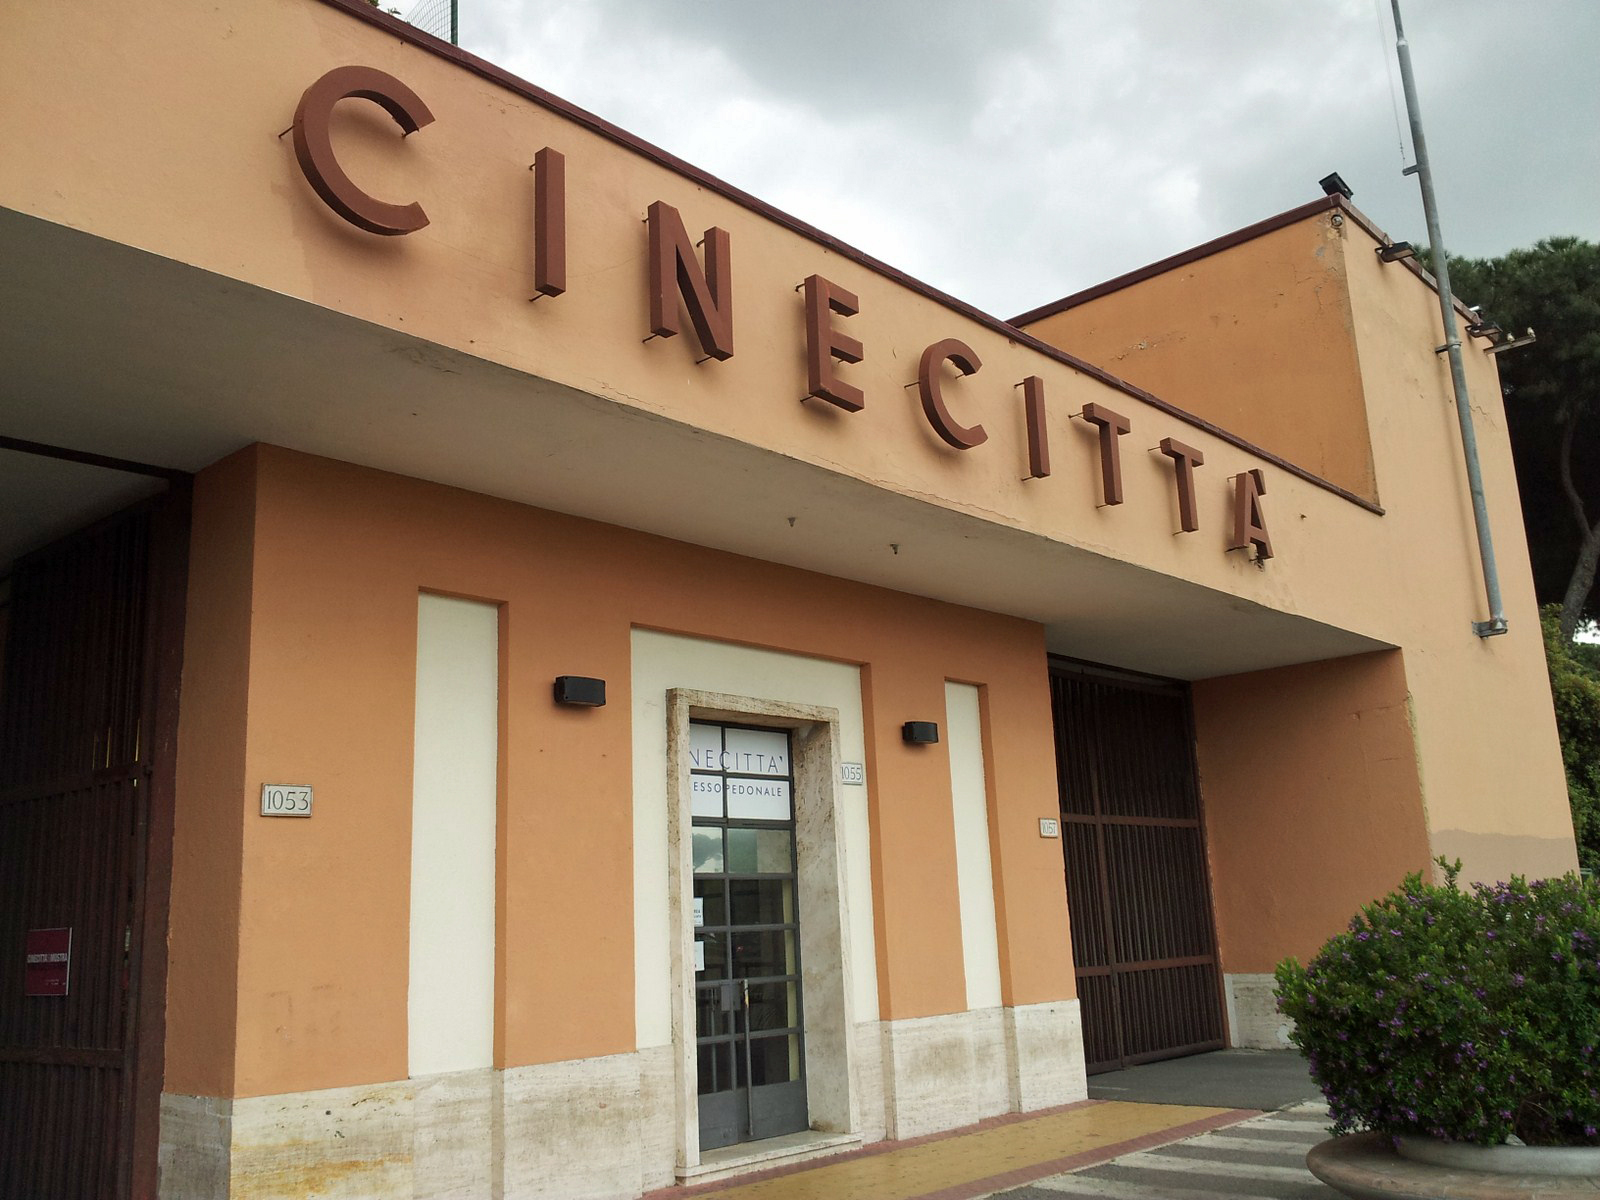 Cineccita, Rome